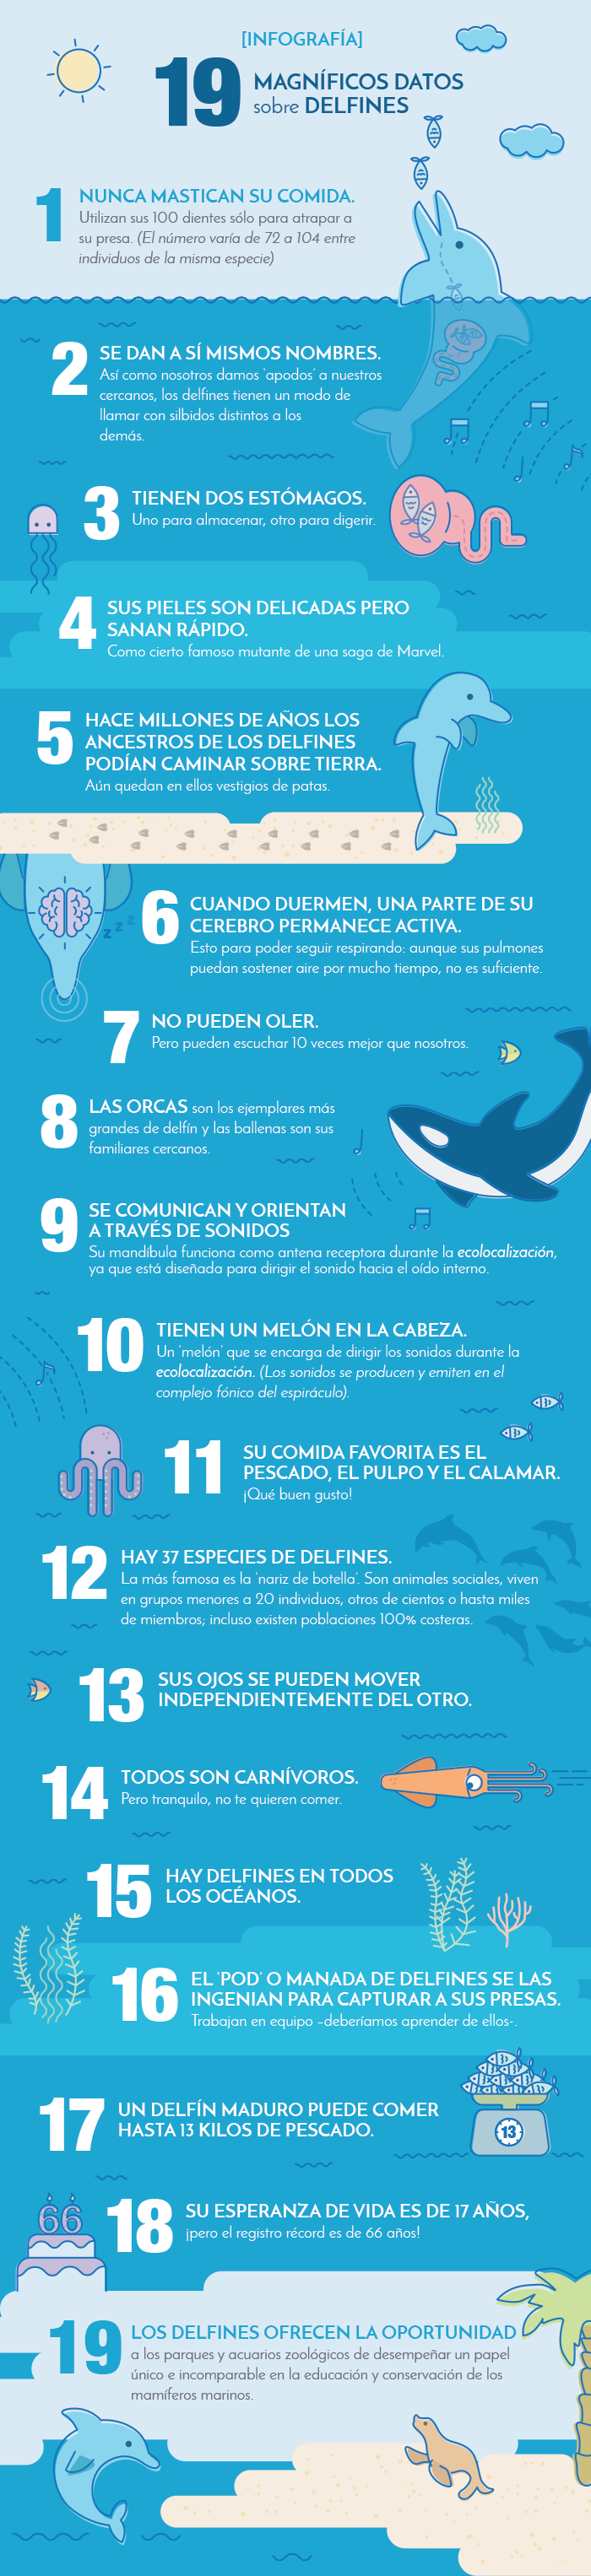 datos-sobre-delfines-infografia